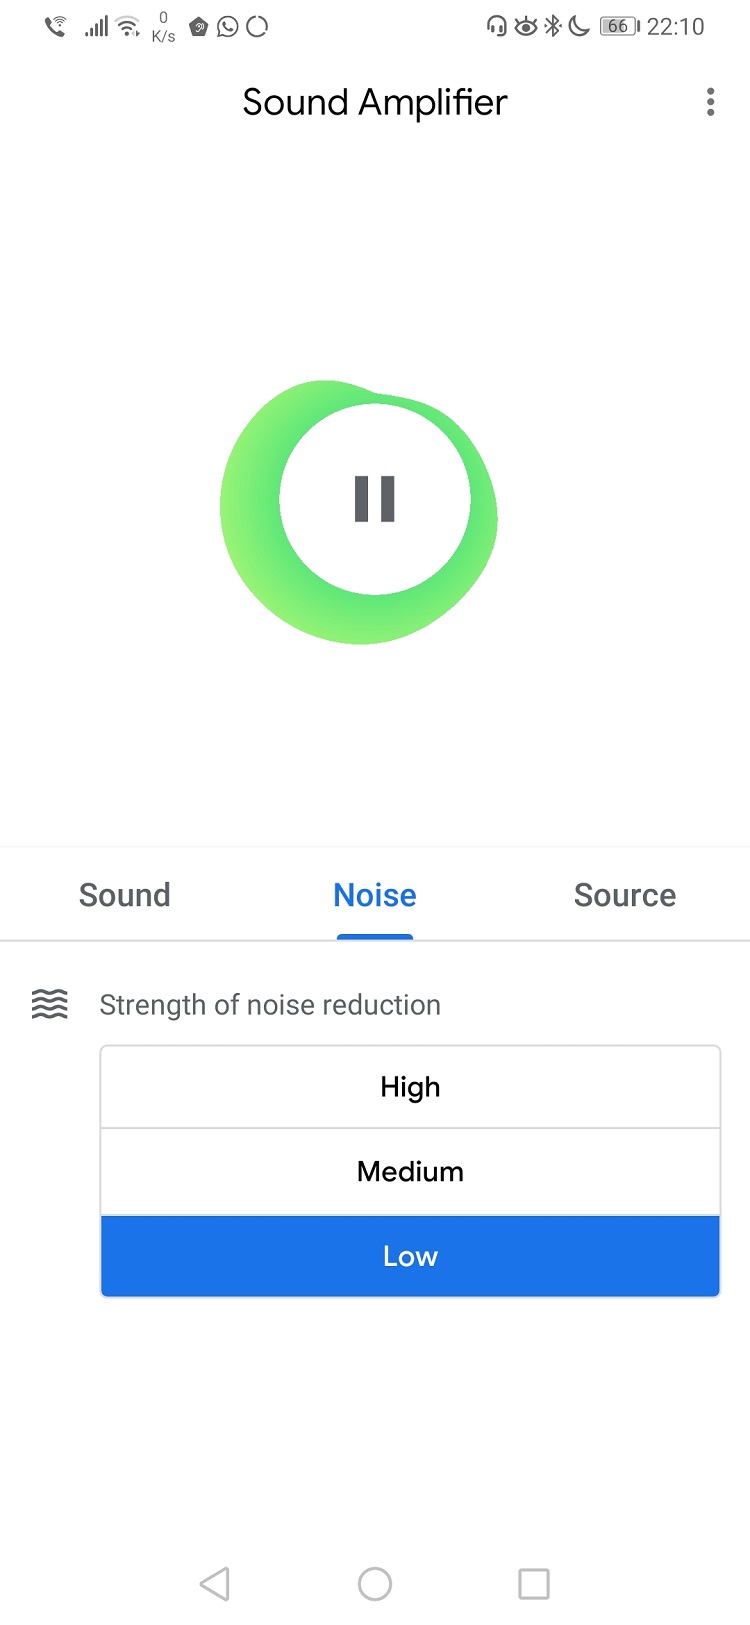 Recomandare: puteti folosi smartphone-ul si Sound Amplifier ca sa auziti mai bine sunetele din jur